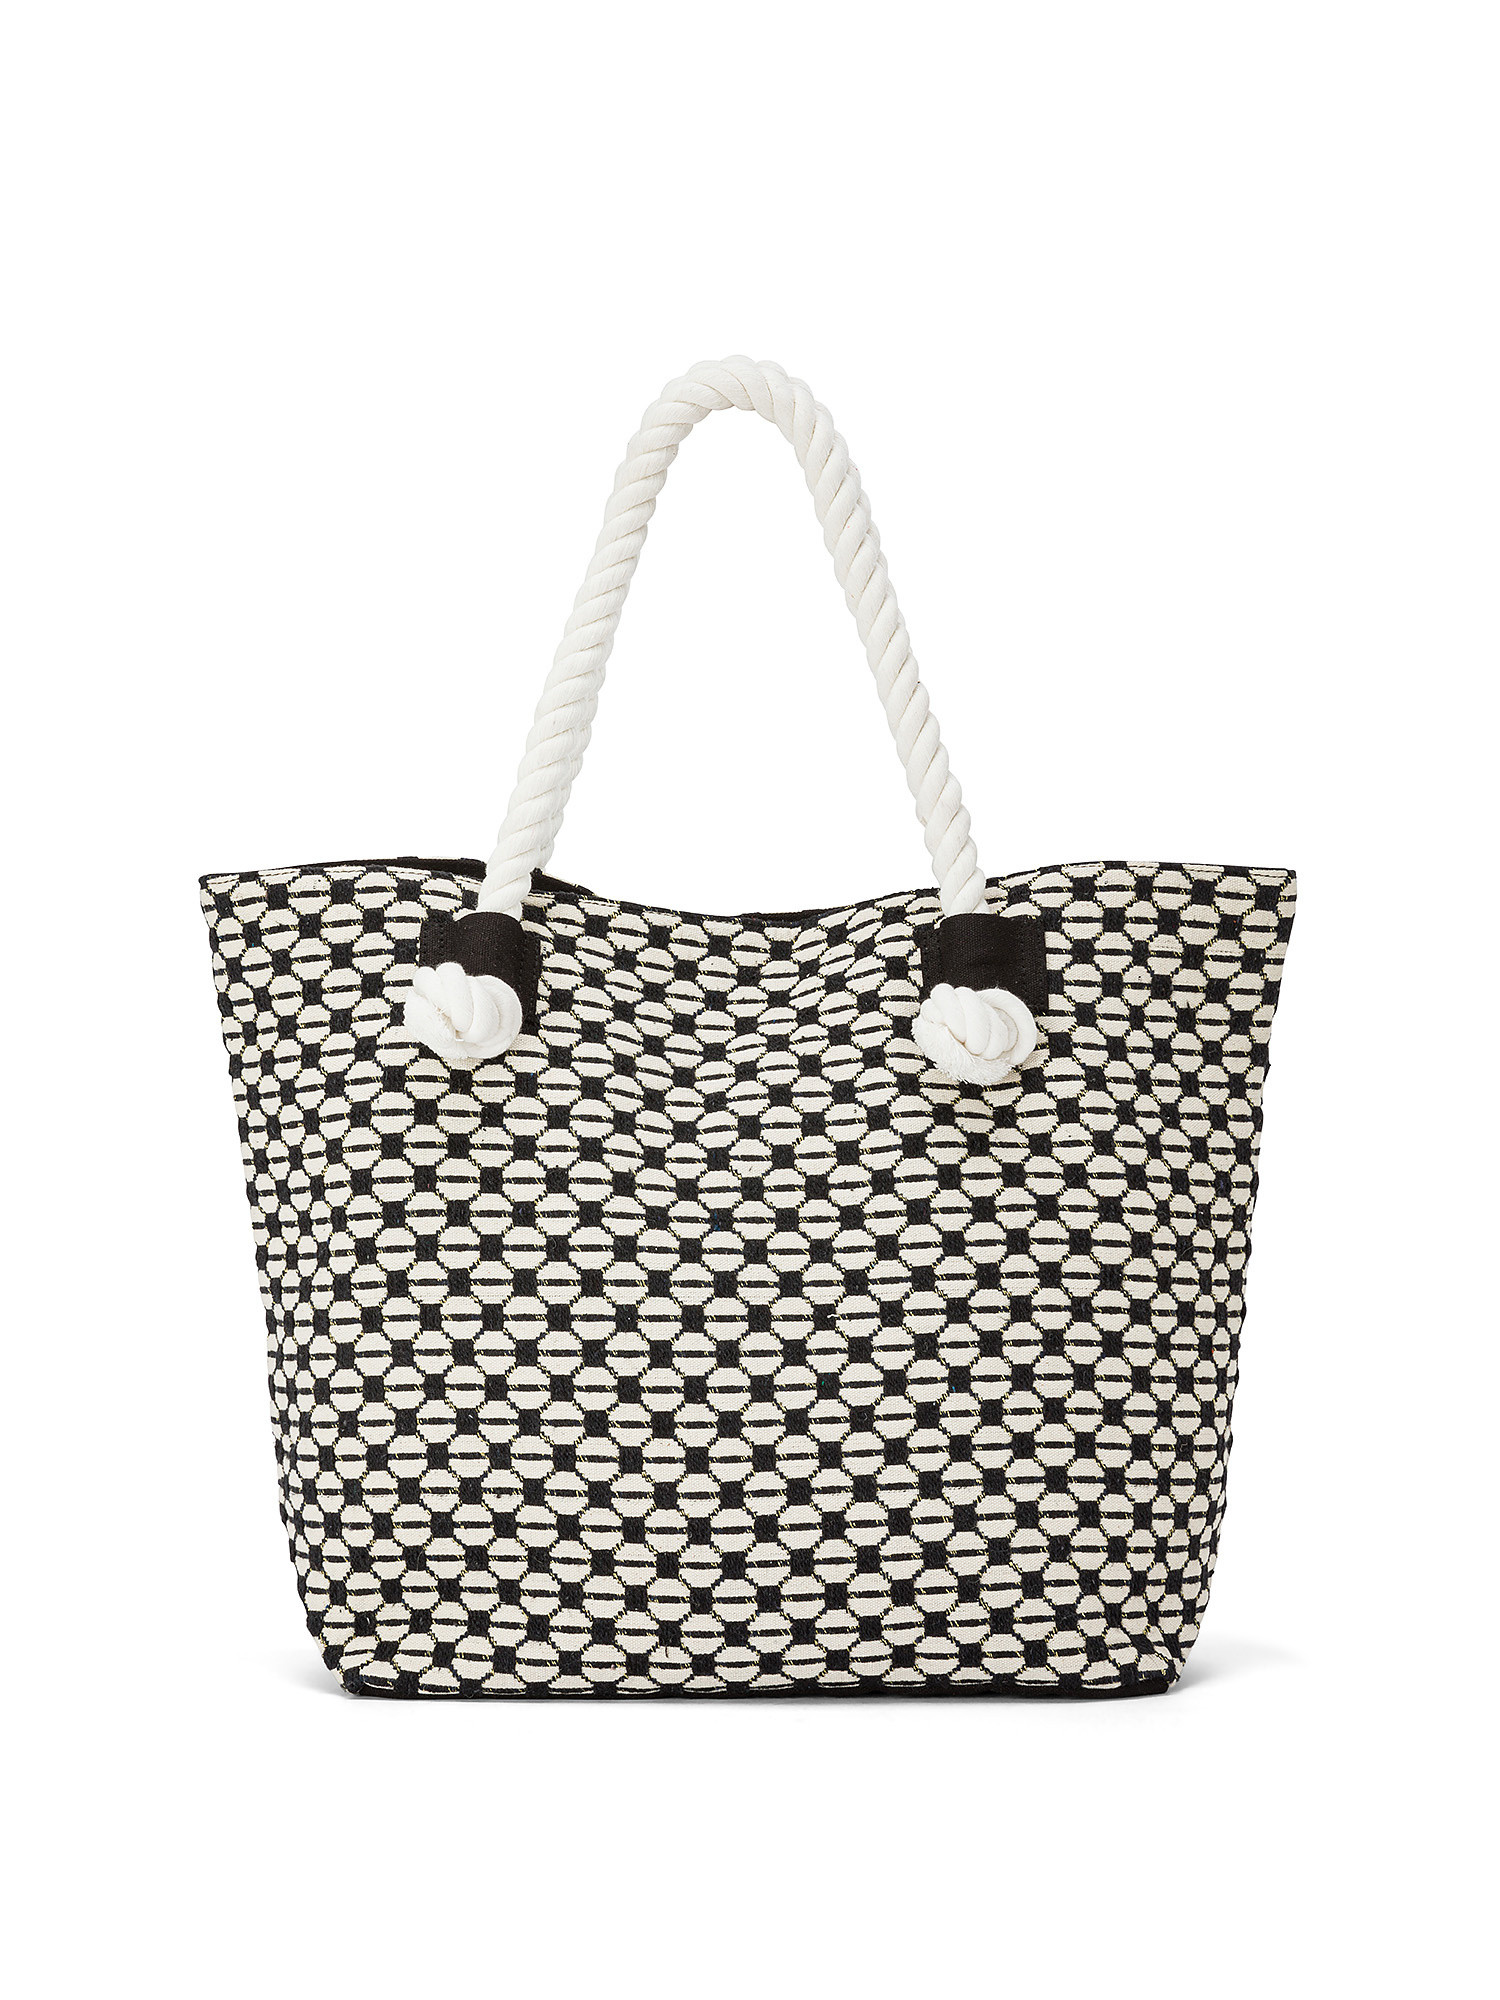 Koan - Shopping bag in tessuto jacquard, Bianco, large image number 0